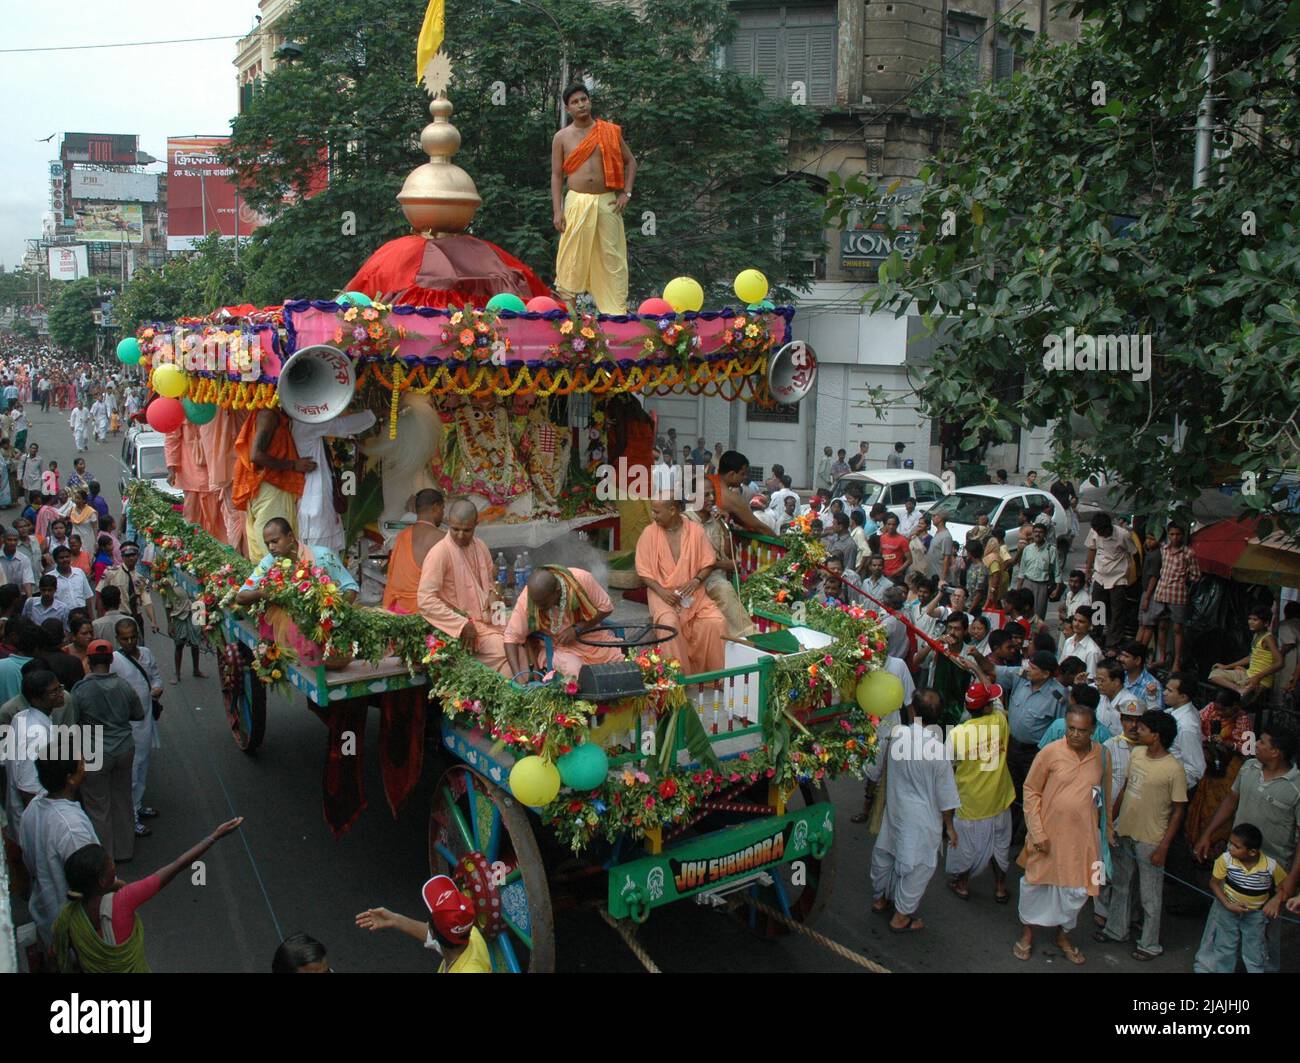 Les dévotés et les membres de la Société internationale pour la conscience de Krishna (ISKCON) marchent avec des chars à la diéité pendant le festival annuel de Rath Yatra. Chaque année, le Dieu hindou Krishna, son frère Balarama, et sa sœur Subhadra sont traditionnellement installés sur d'énormes chars ou des "serments" qui sont tirés par des dévotés dans une procession, ou "yatra" à travers la rue. Kolkata, Inde. 16 juillet 2007. Banque D'Images